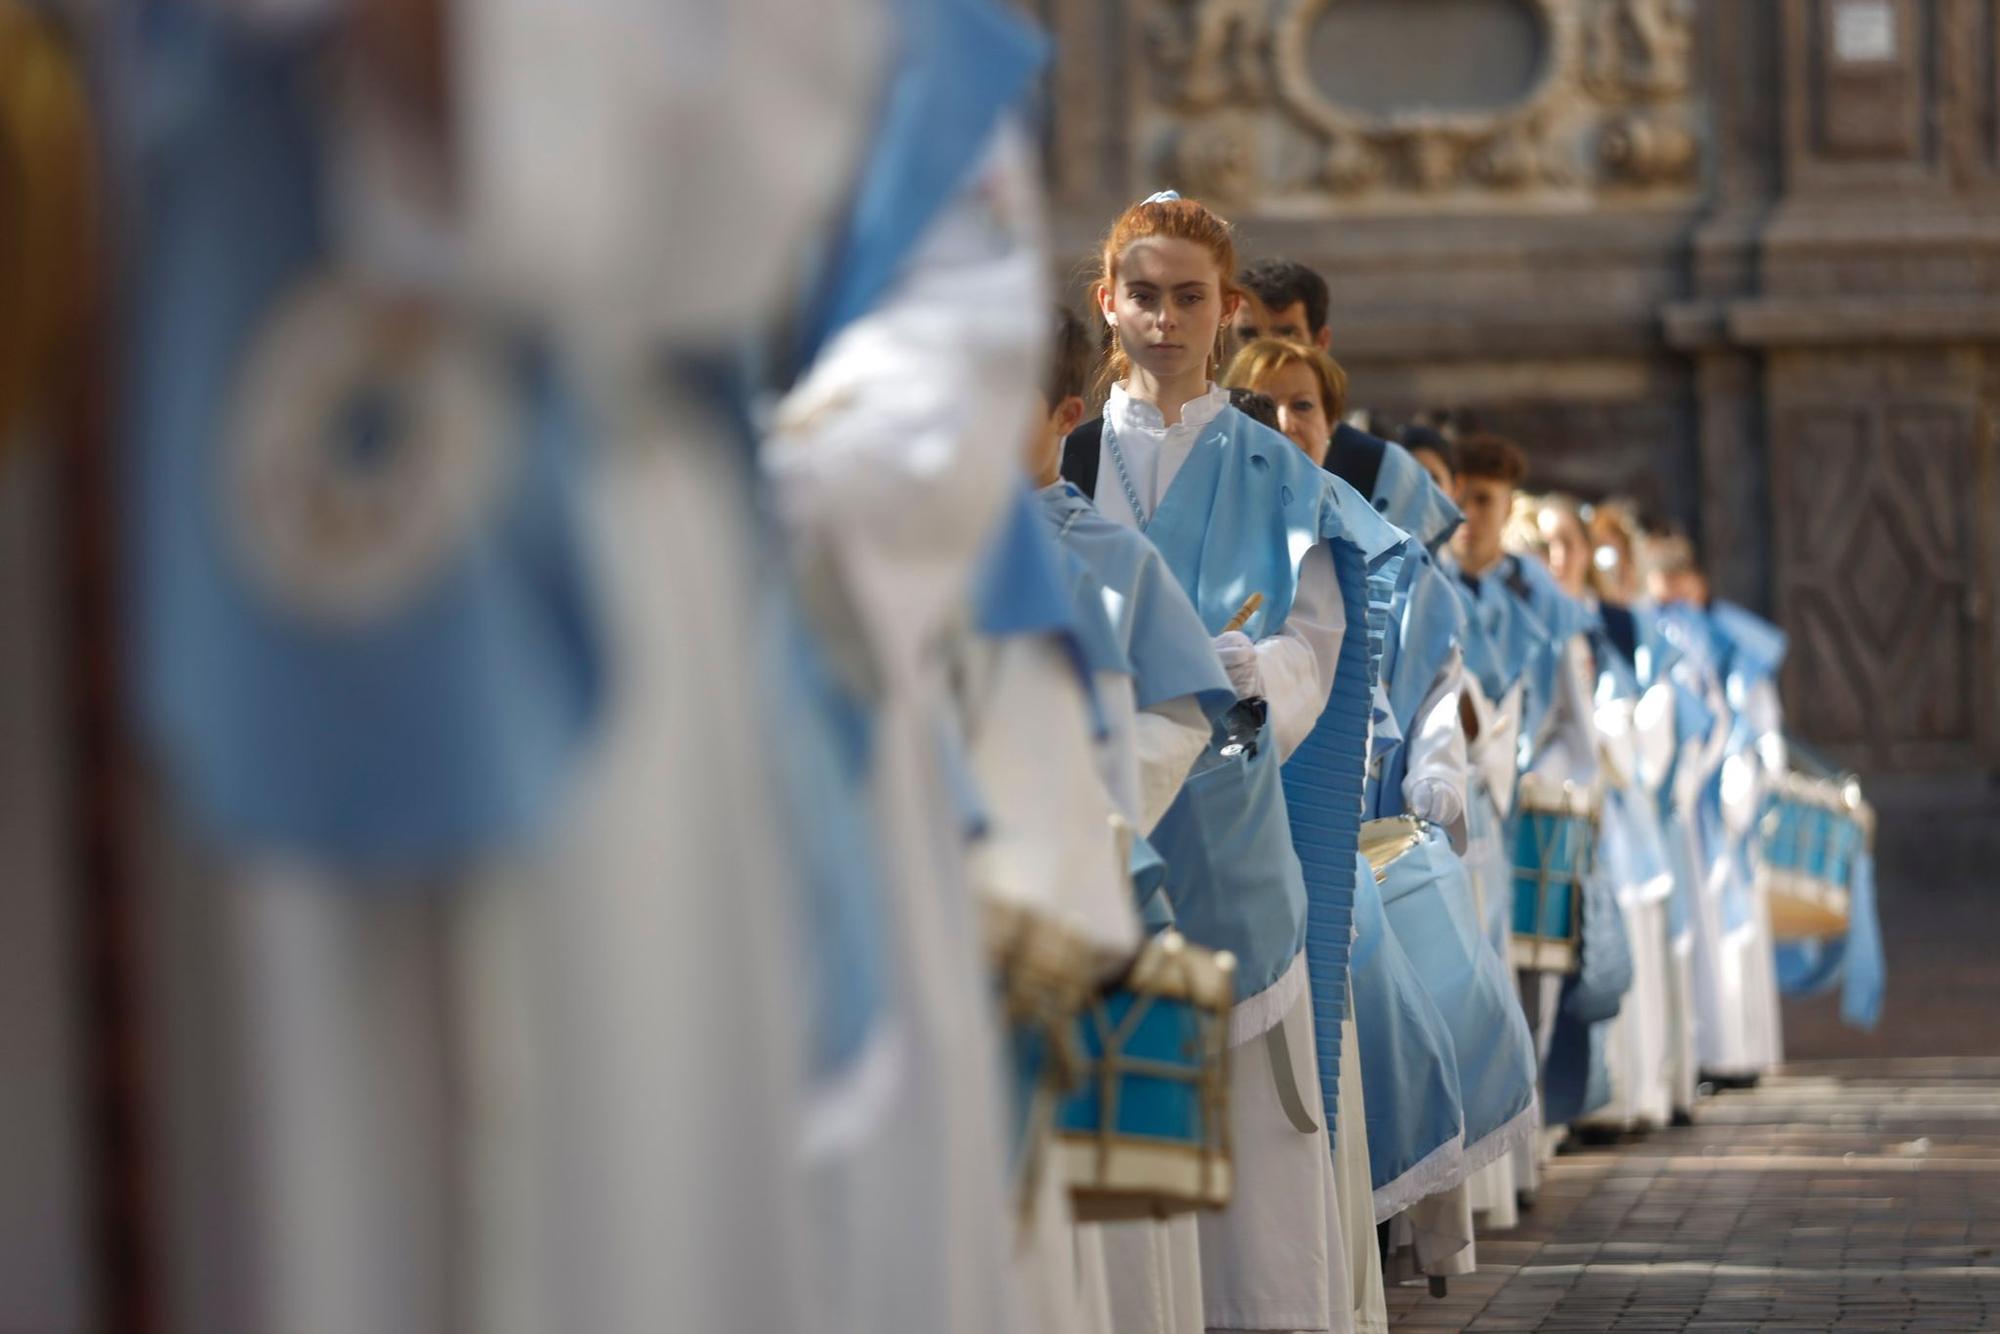 En imágenes | Procesión del Domingo de Resurrección en Zaragoza